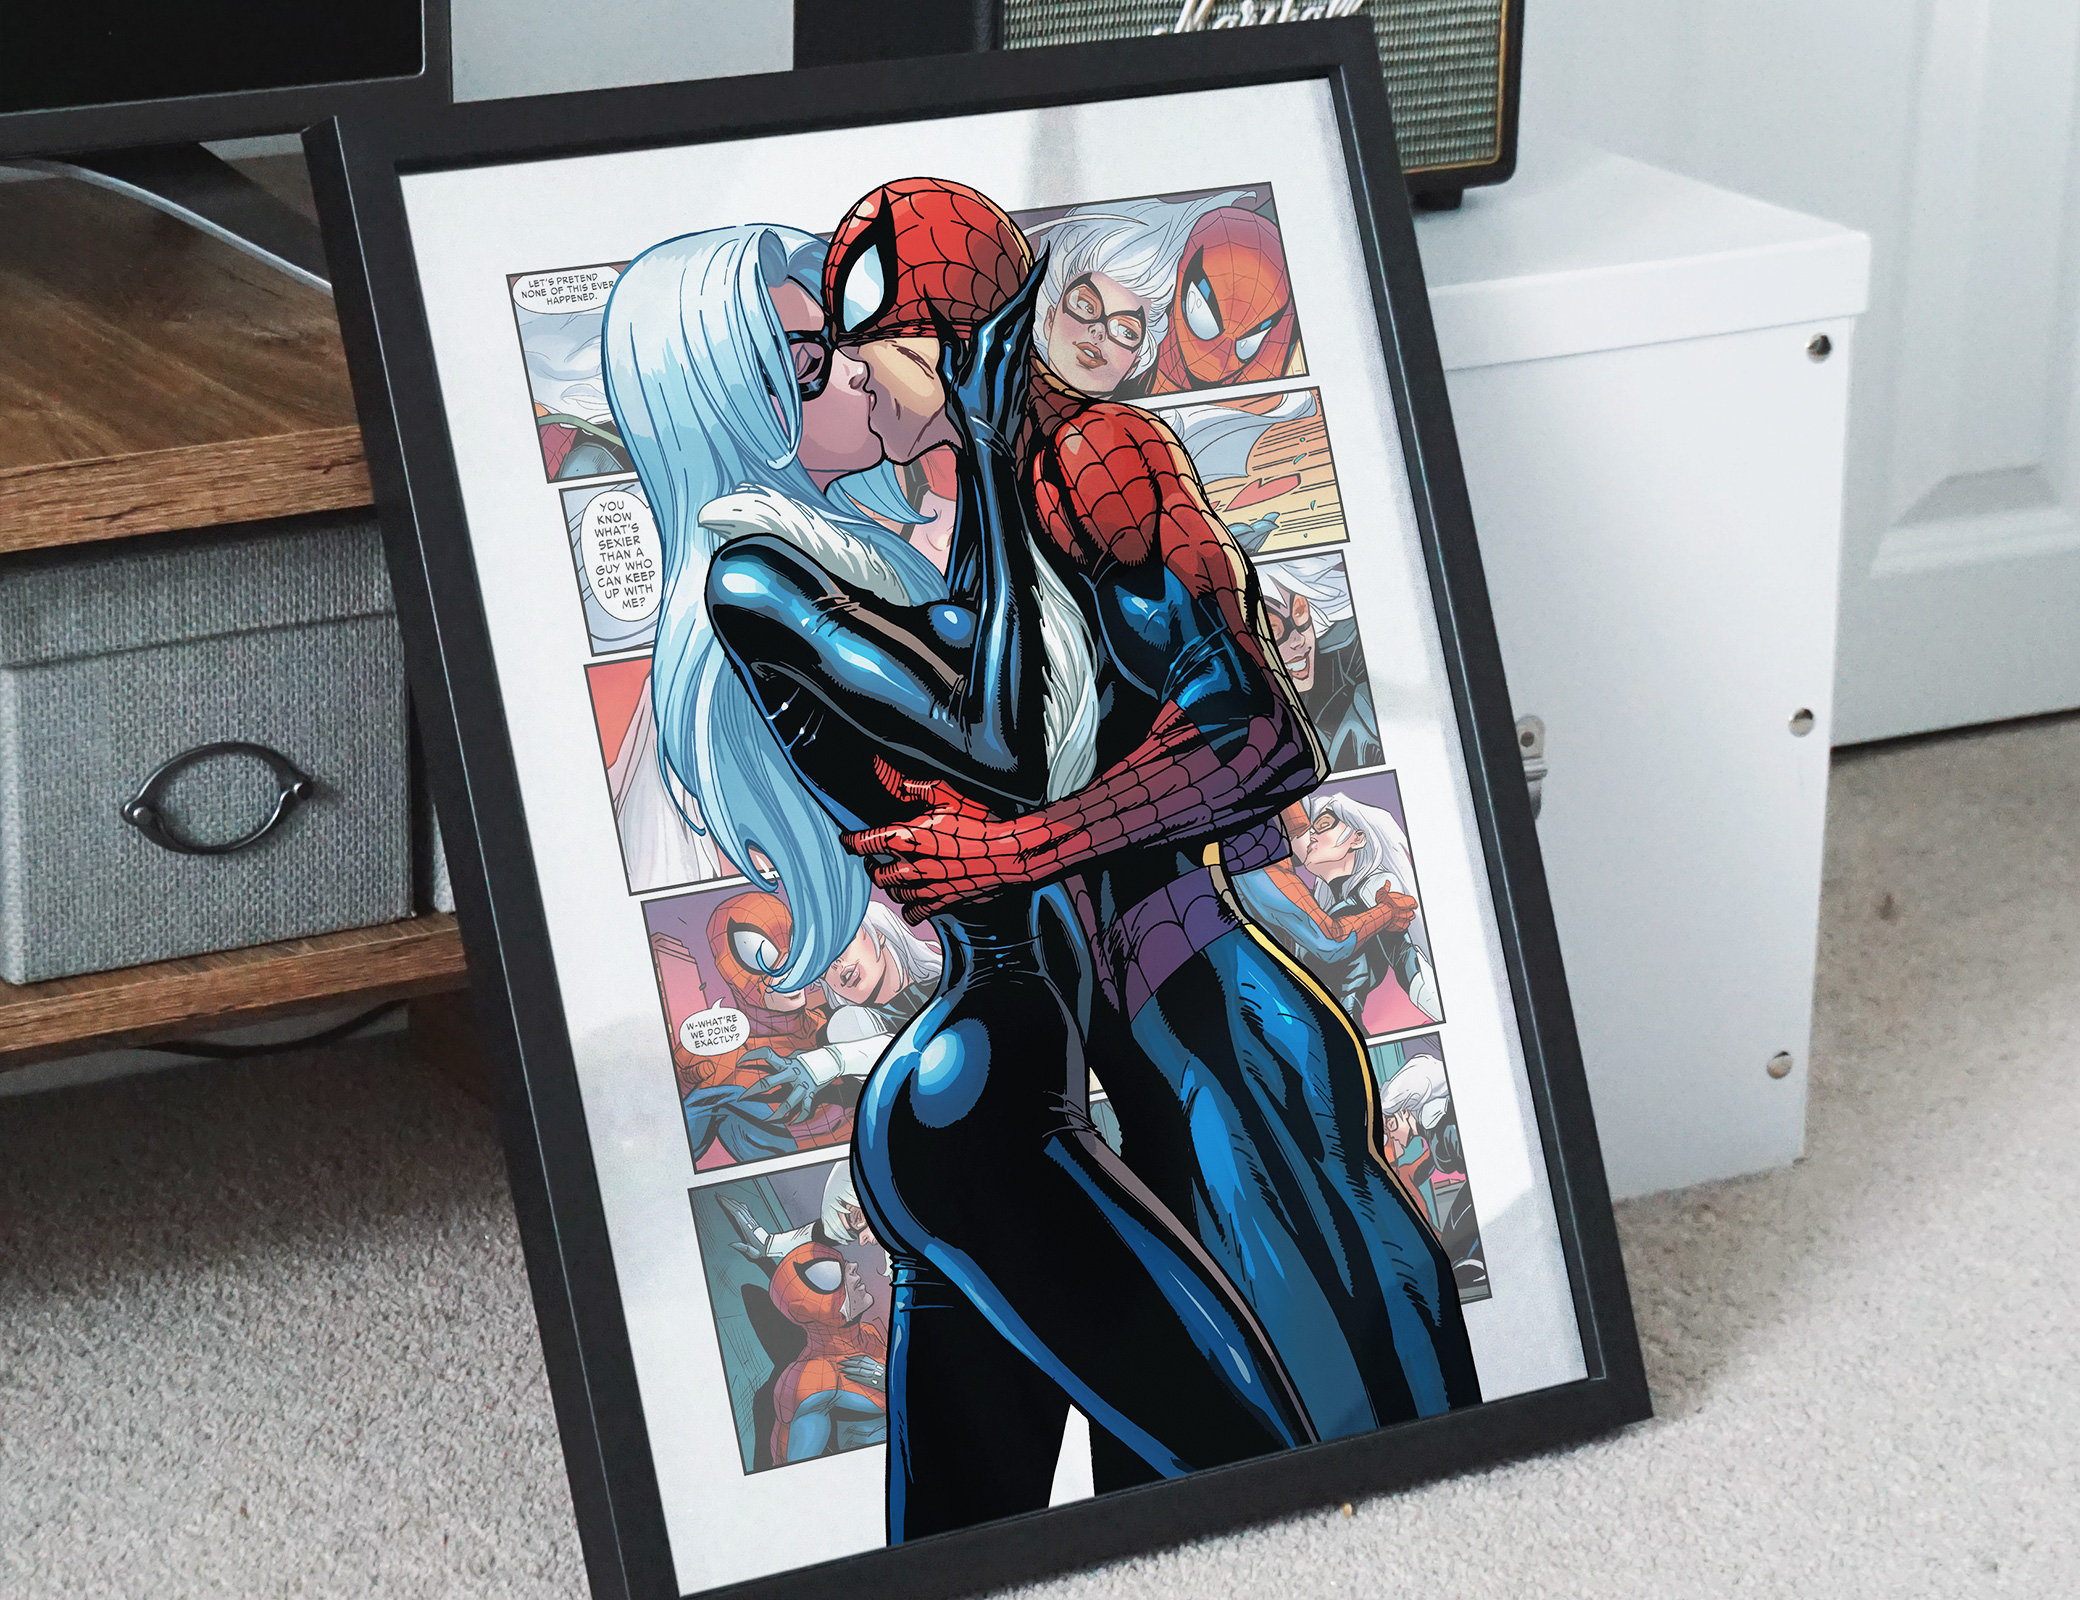 Spiderman di San Valentino, arte della parete in stile fumetto, prodotto  digitale, download istantaneo 1:1 -  Italia